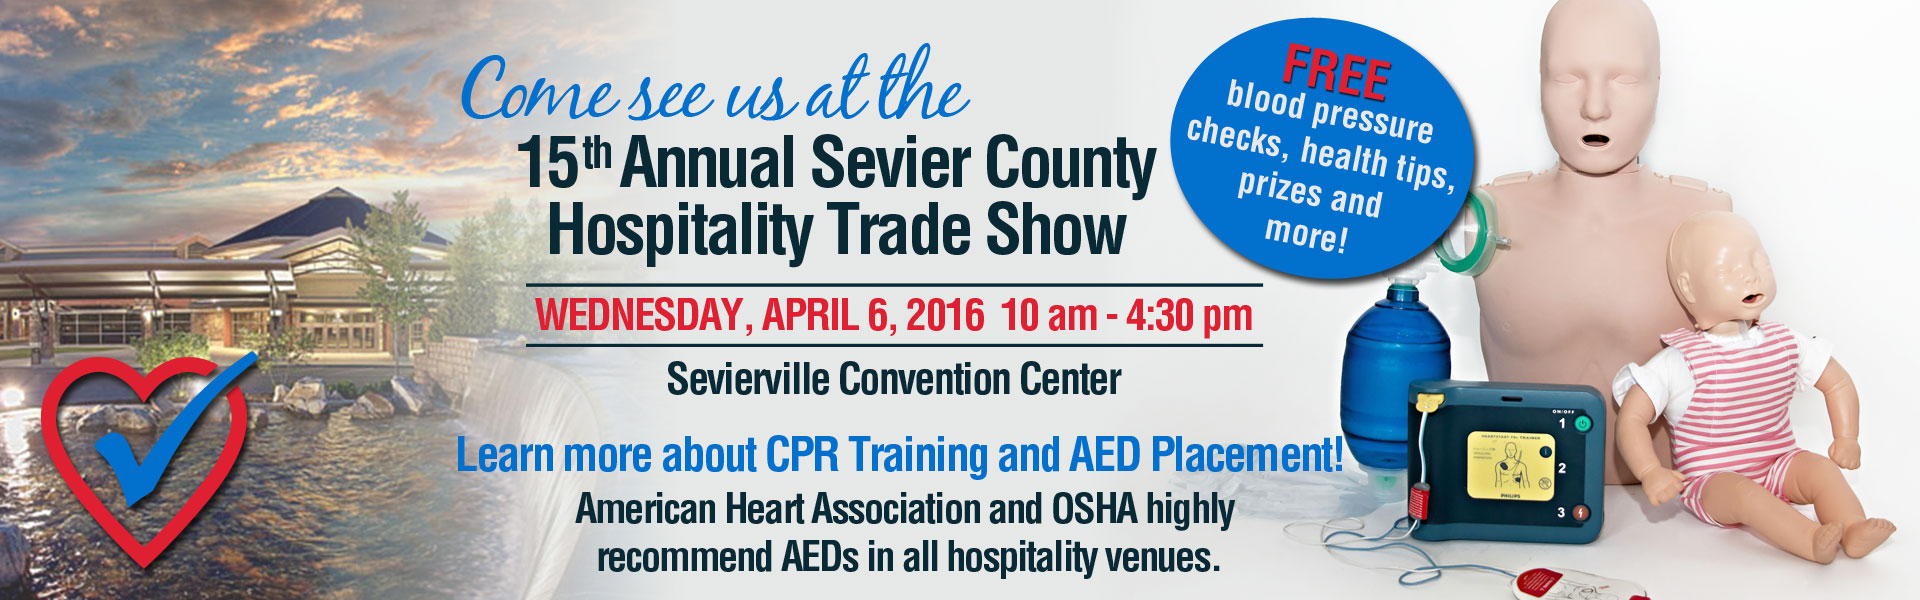 Sevier Hospitality Trade Show